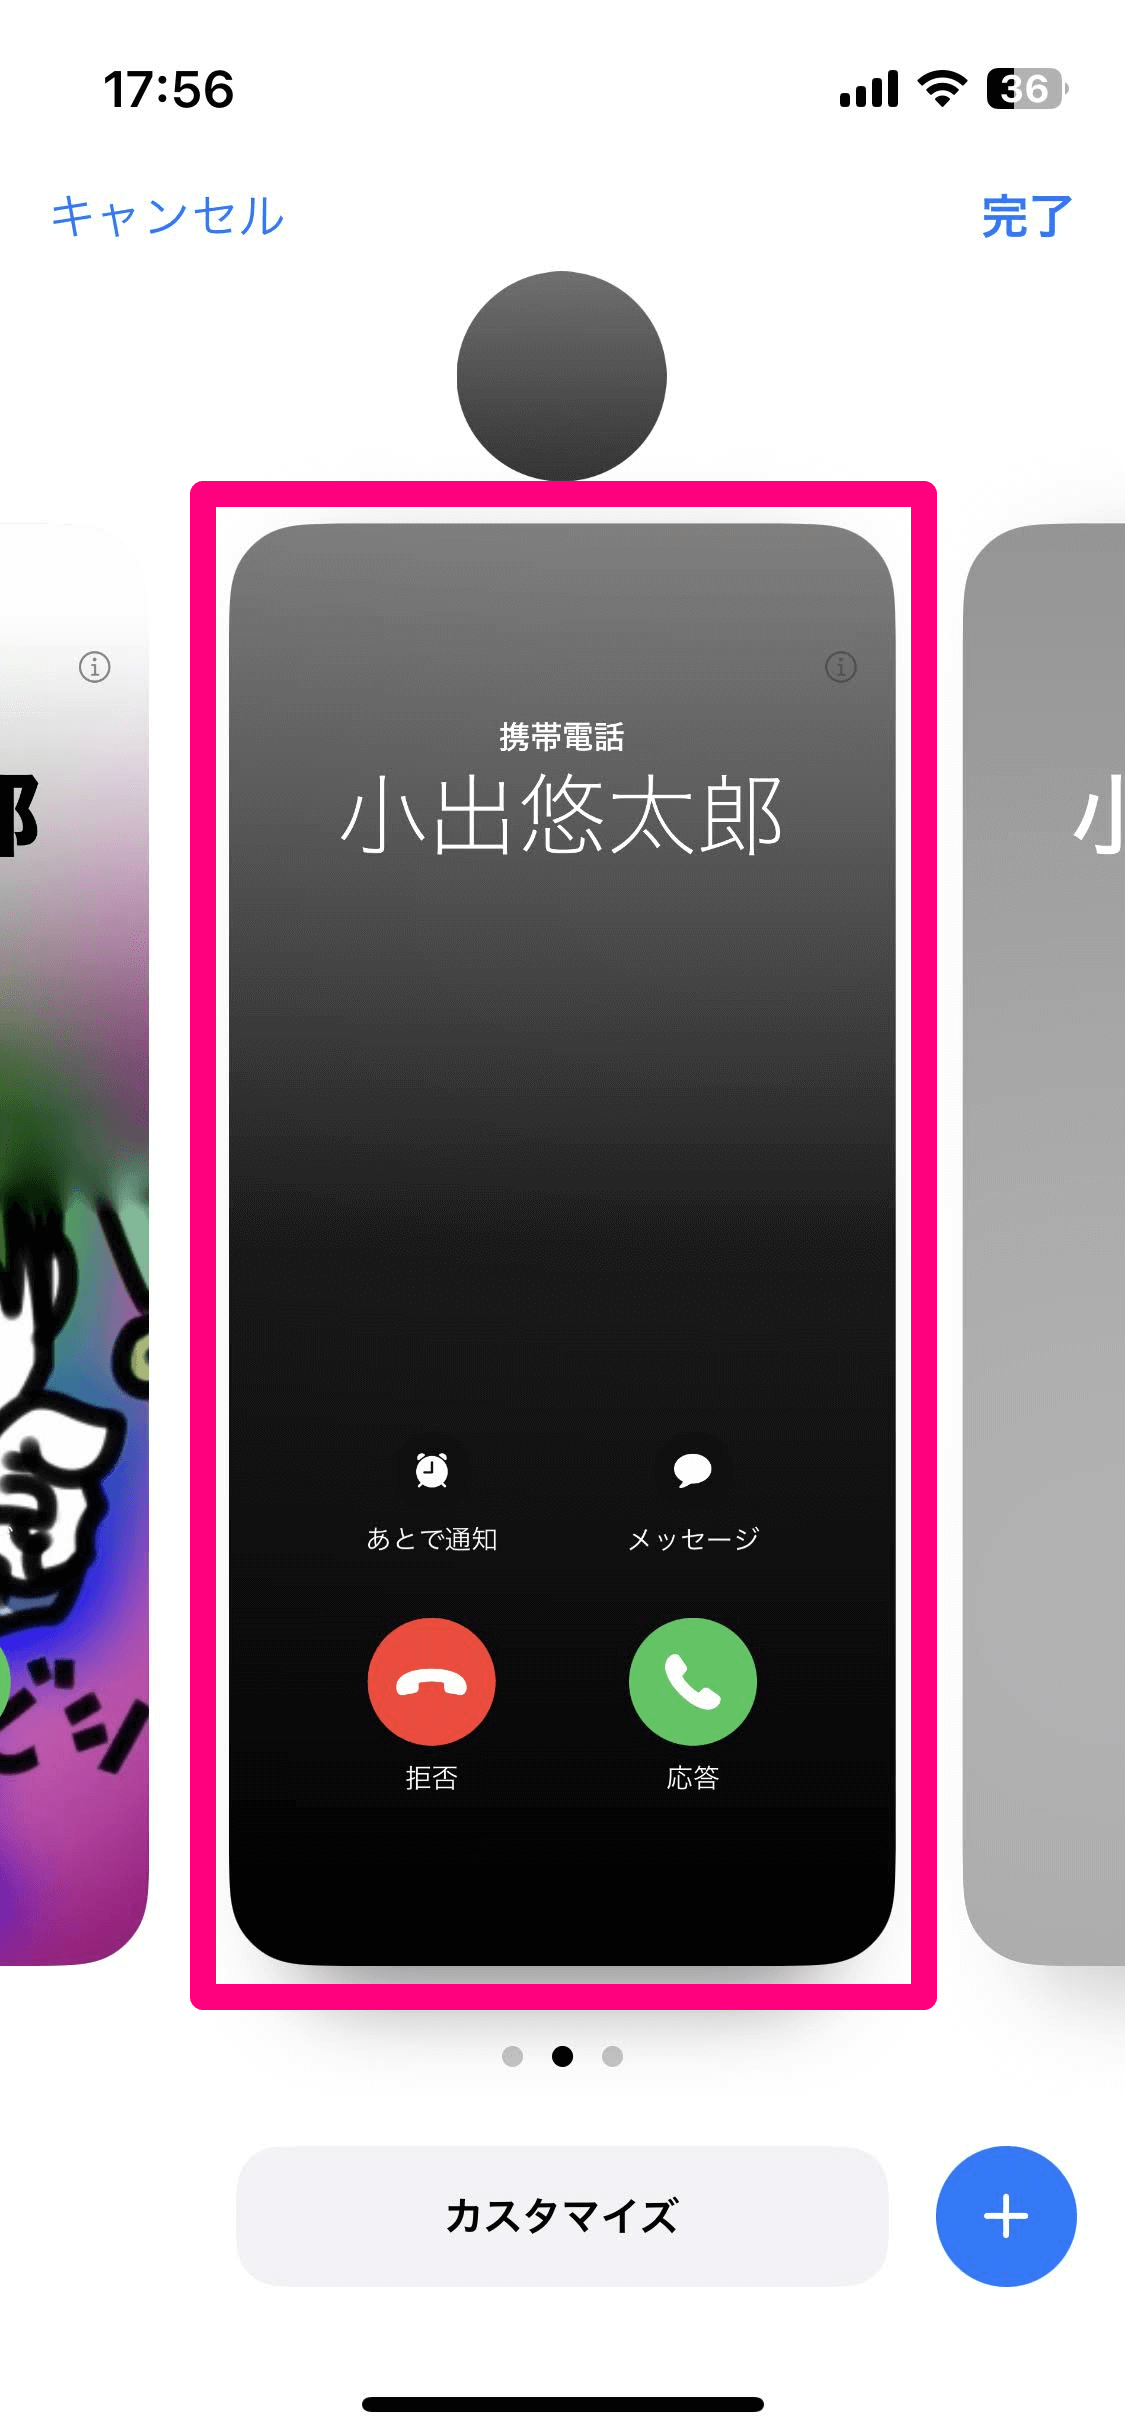 【iOS 17】連絡先のポスターを作成する方法。電話やNameDropでオリジナルの画面を相手に表示できる